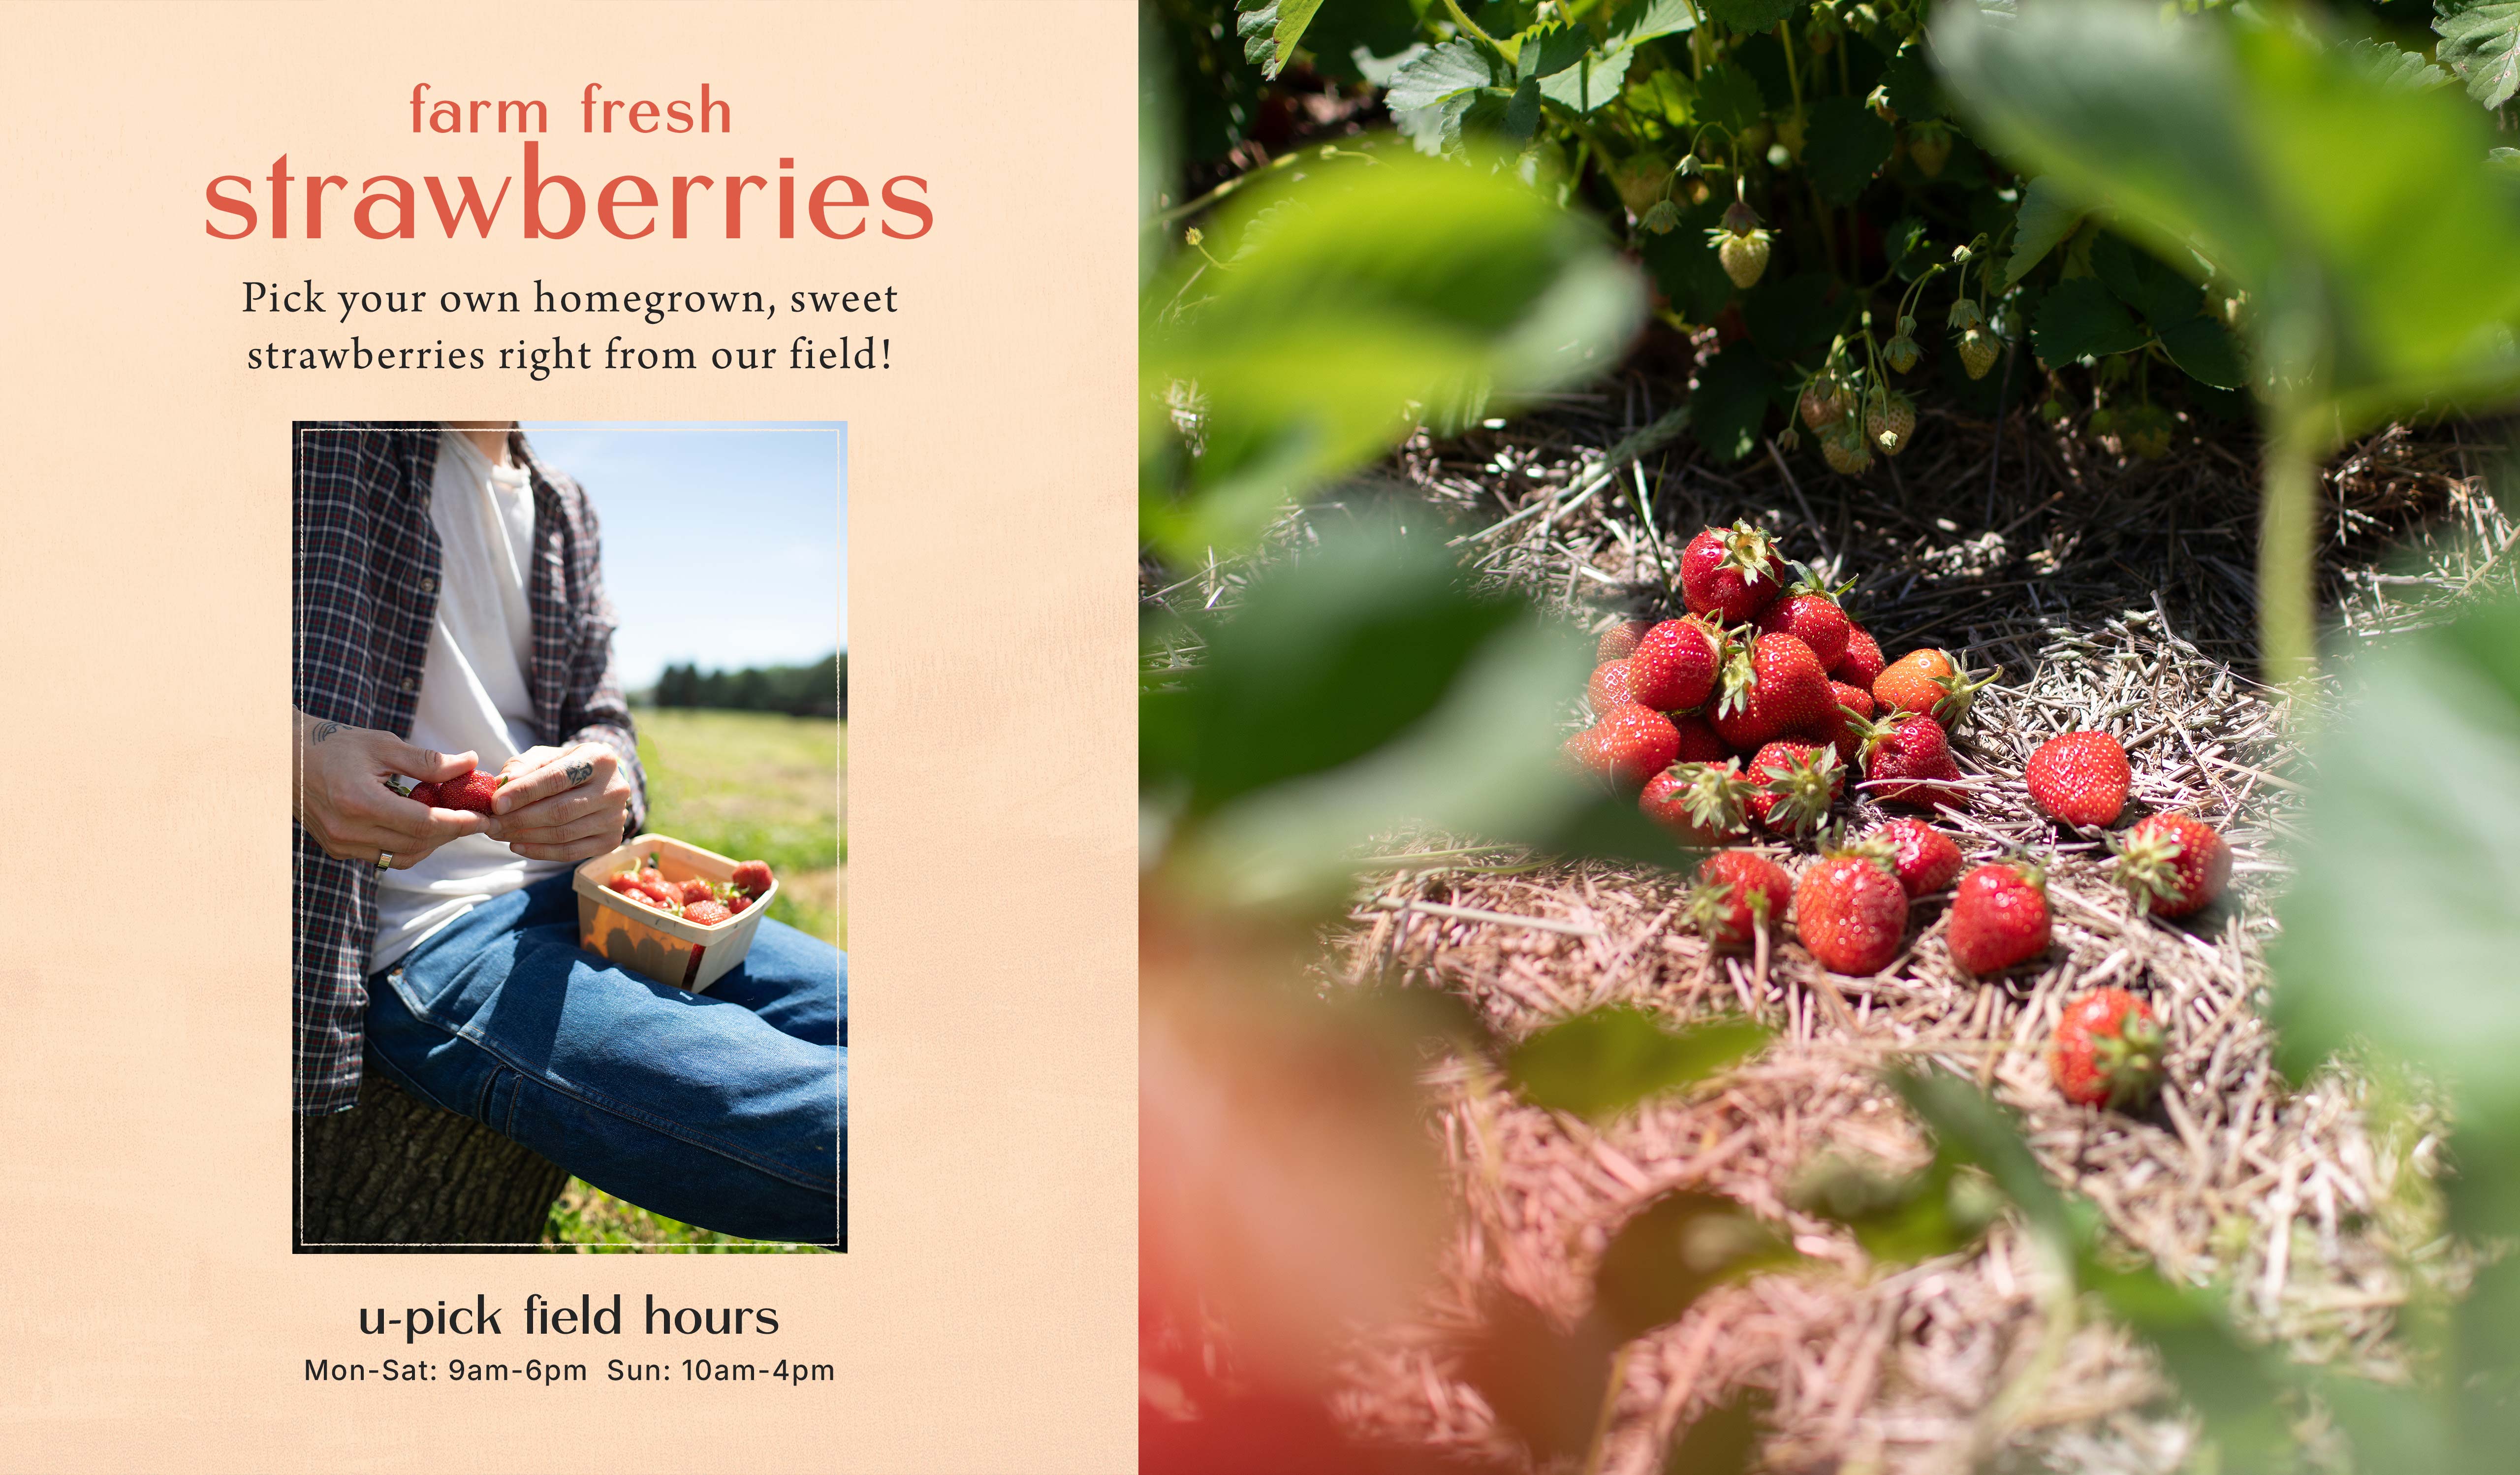 Farm fresh strawberries at Hoen's Garden Center